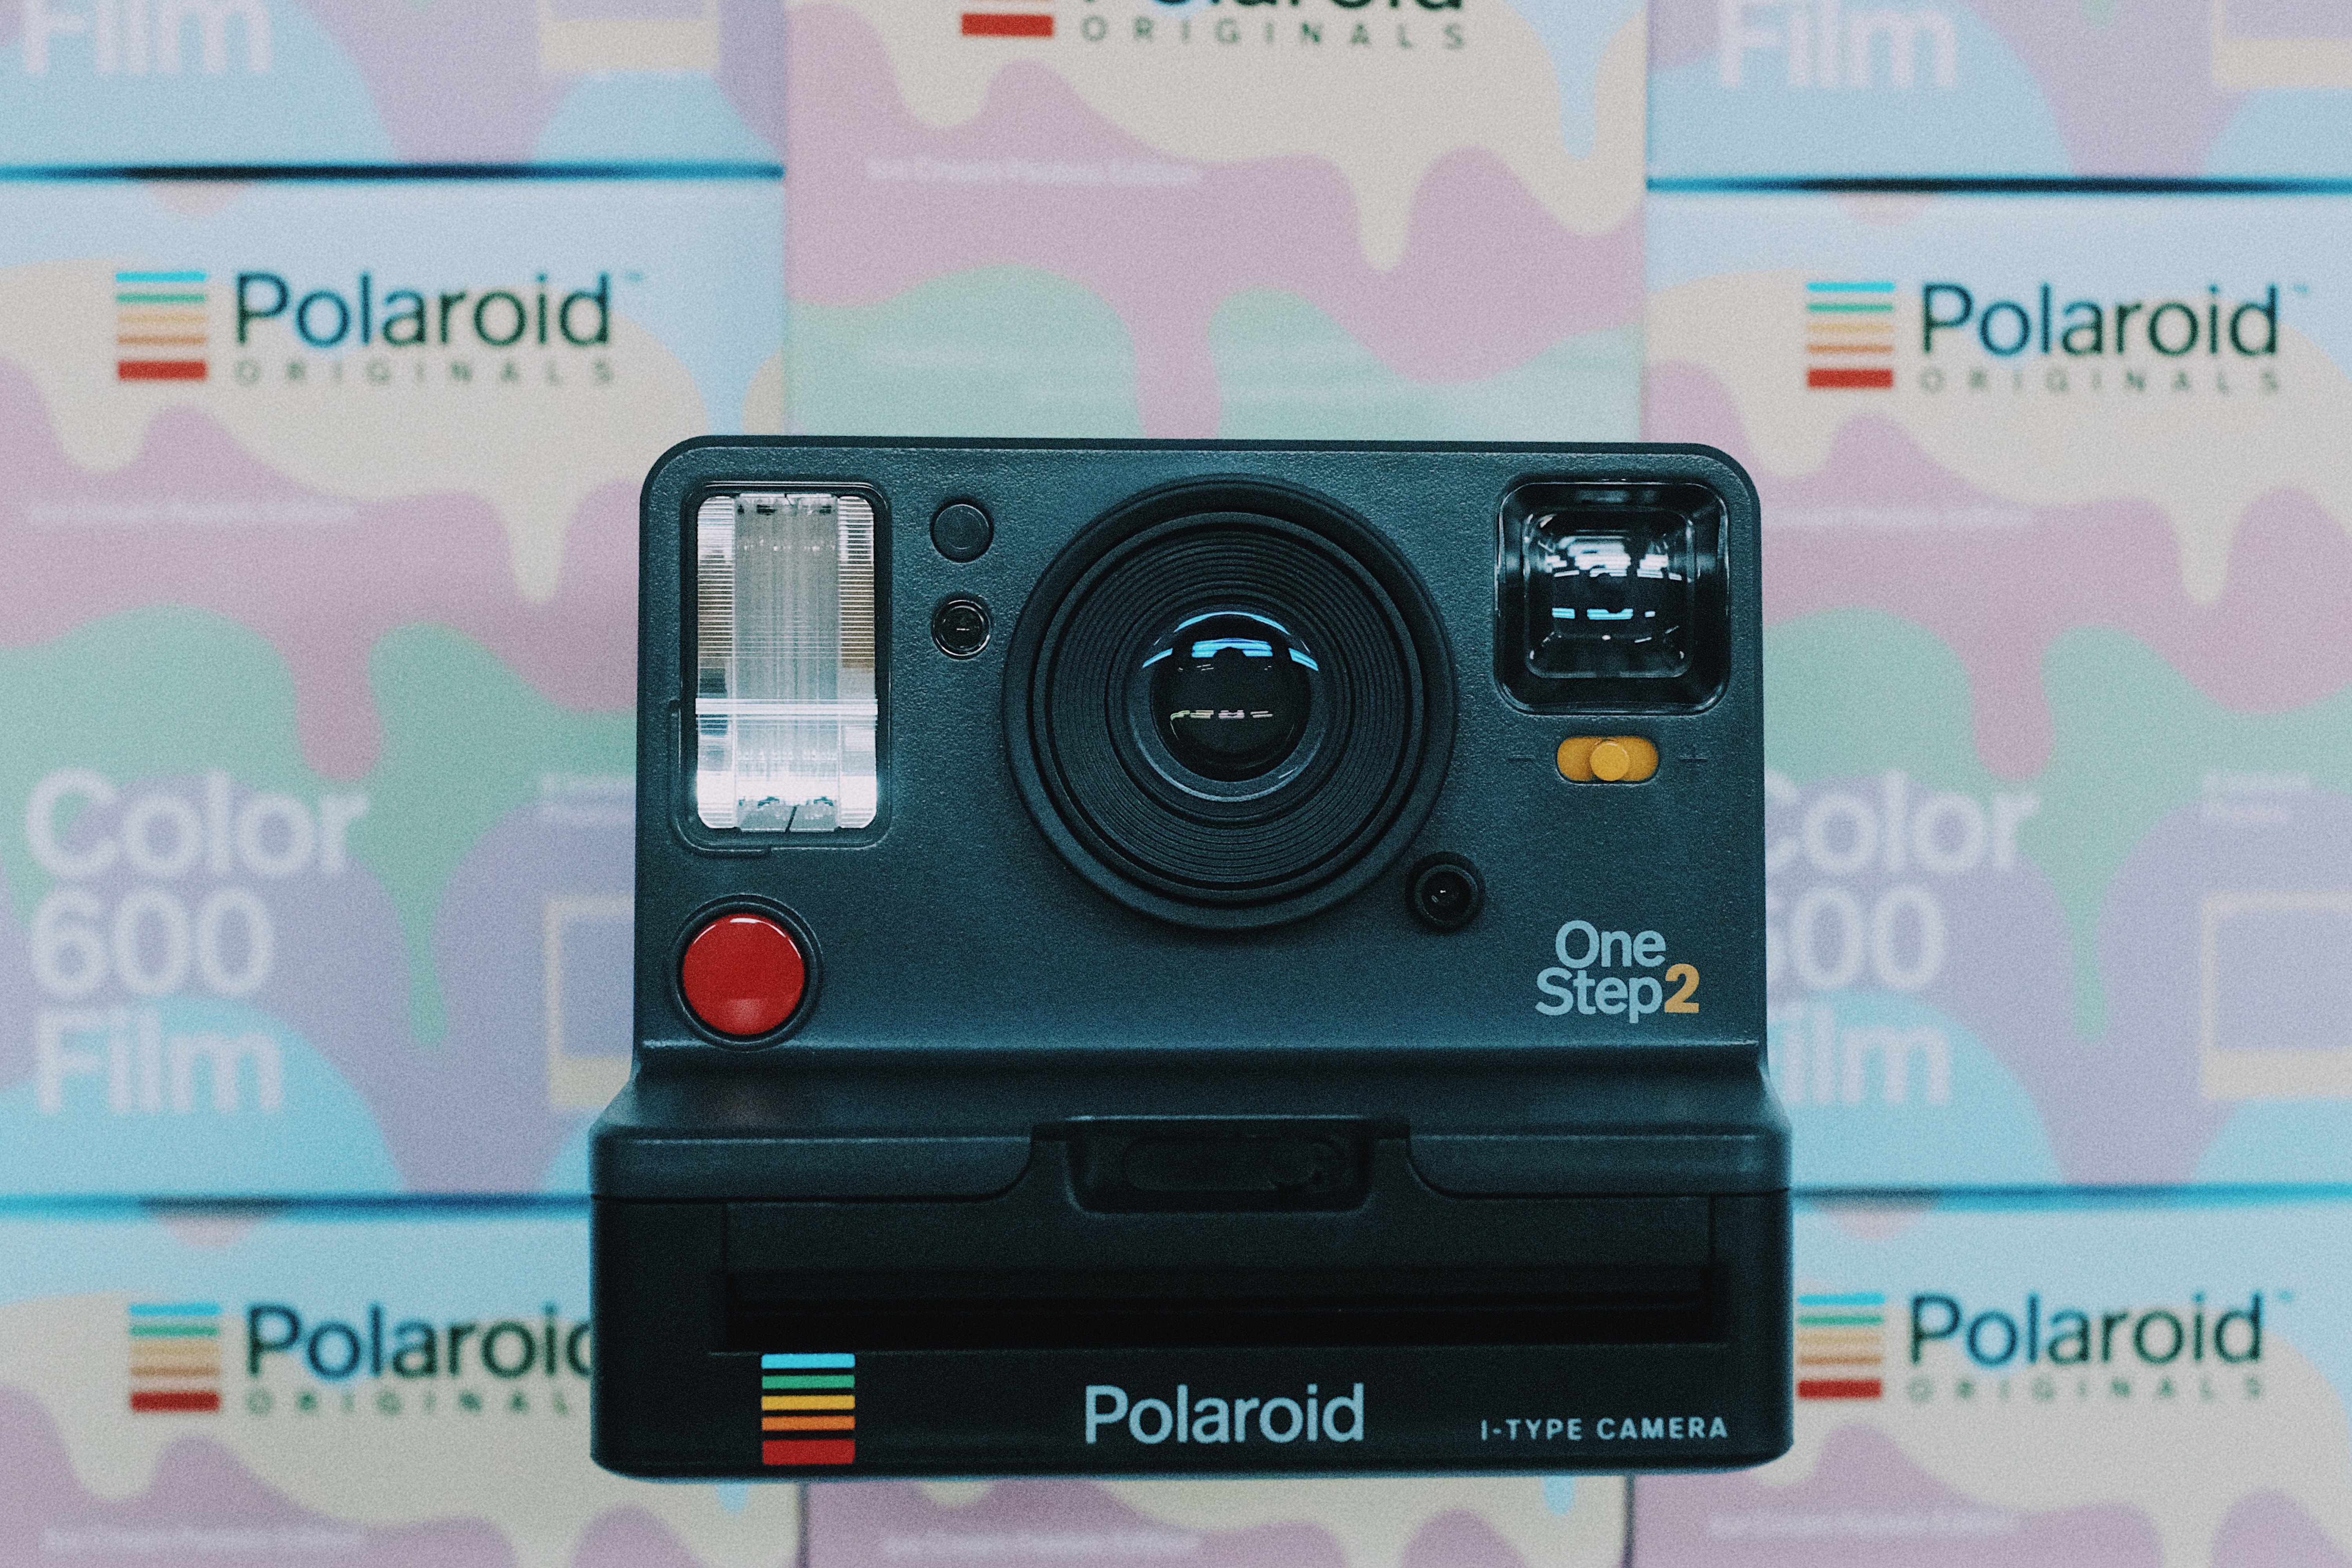 潮流概念店 OVERLAB x Polaroid Originals 文化交流企劃始動